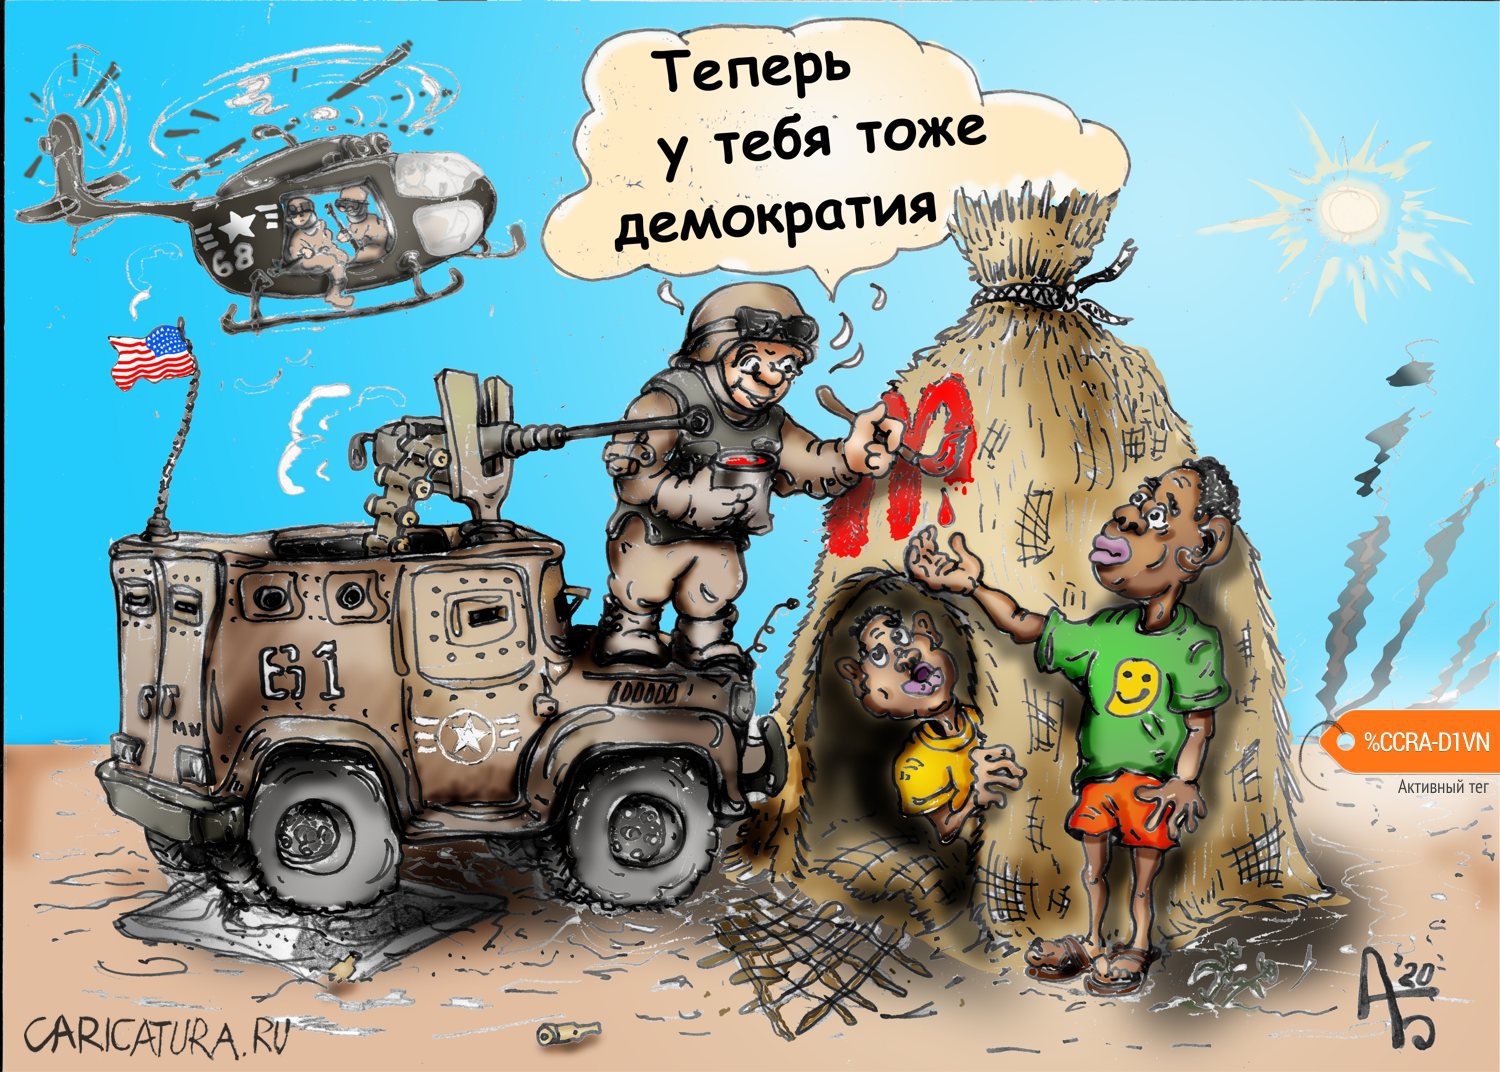 Карикатура "Экспорт демократии", Александр Богданов